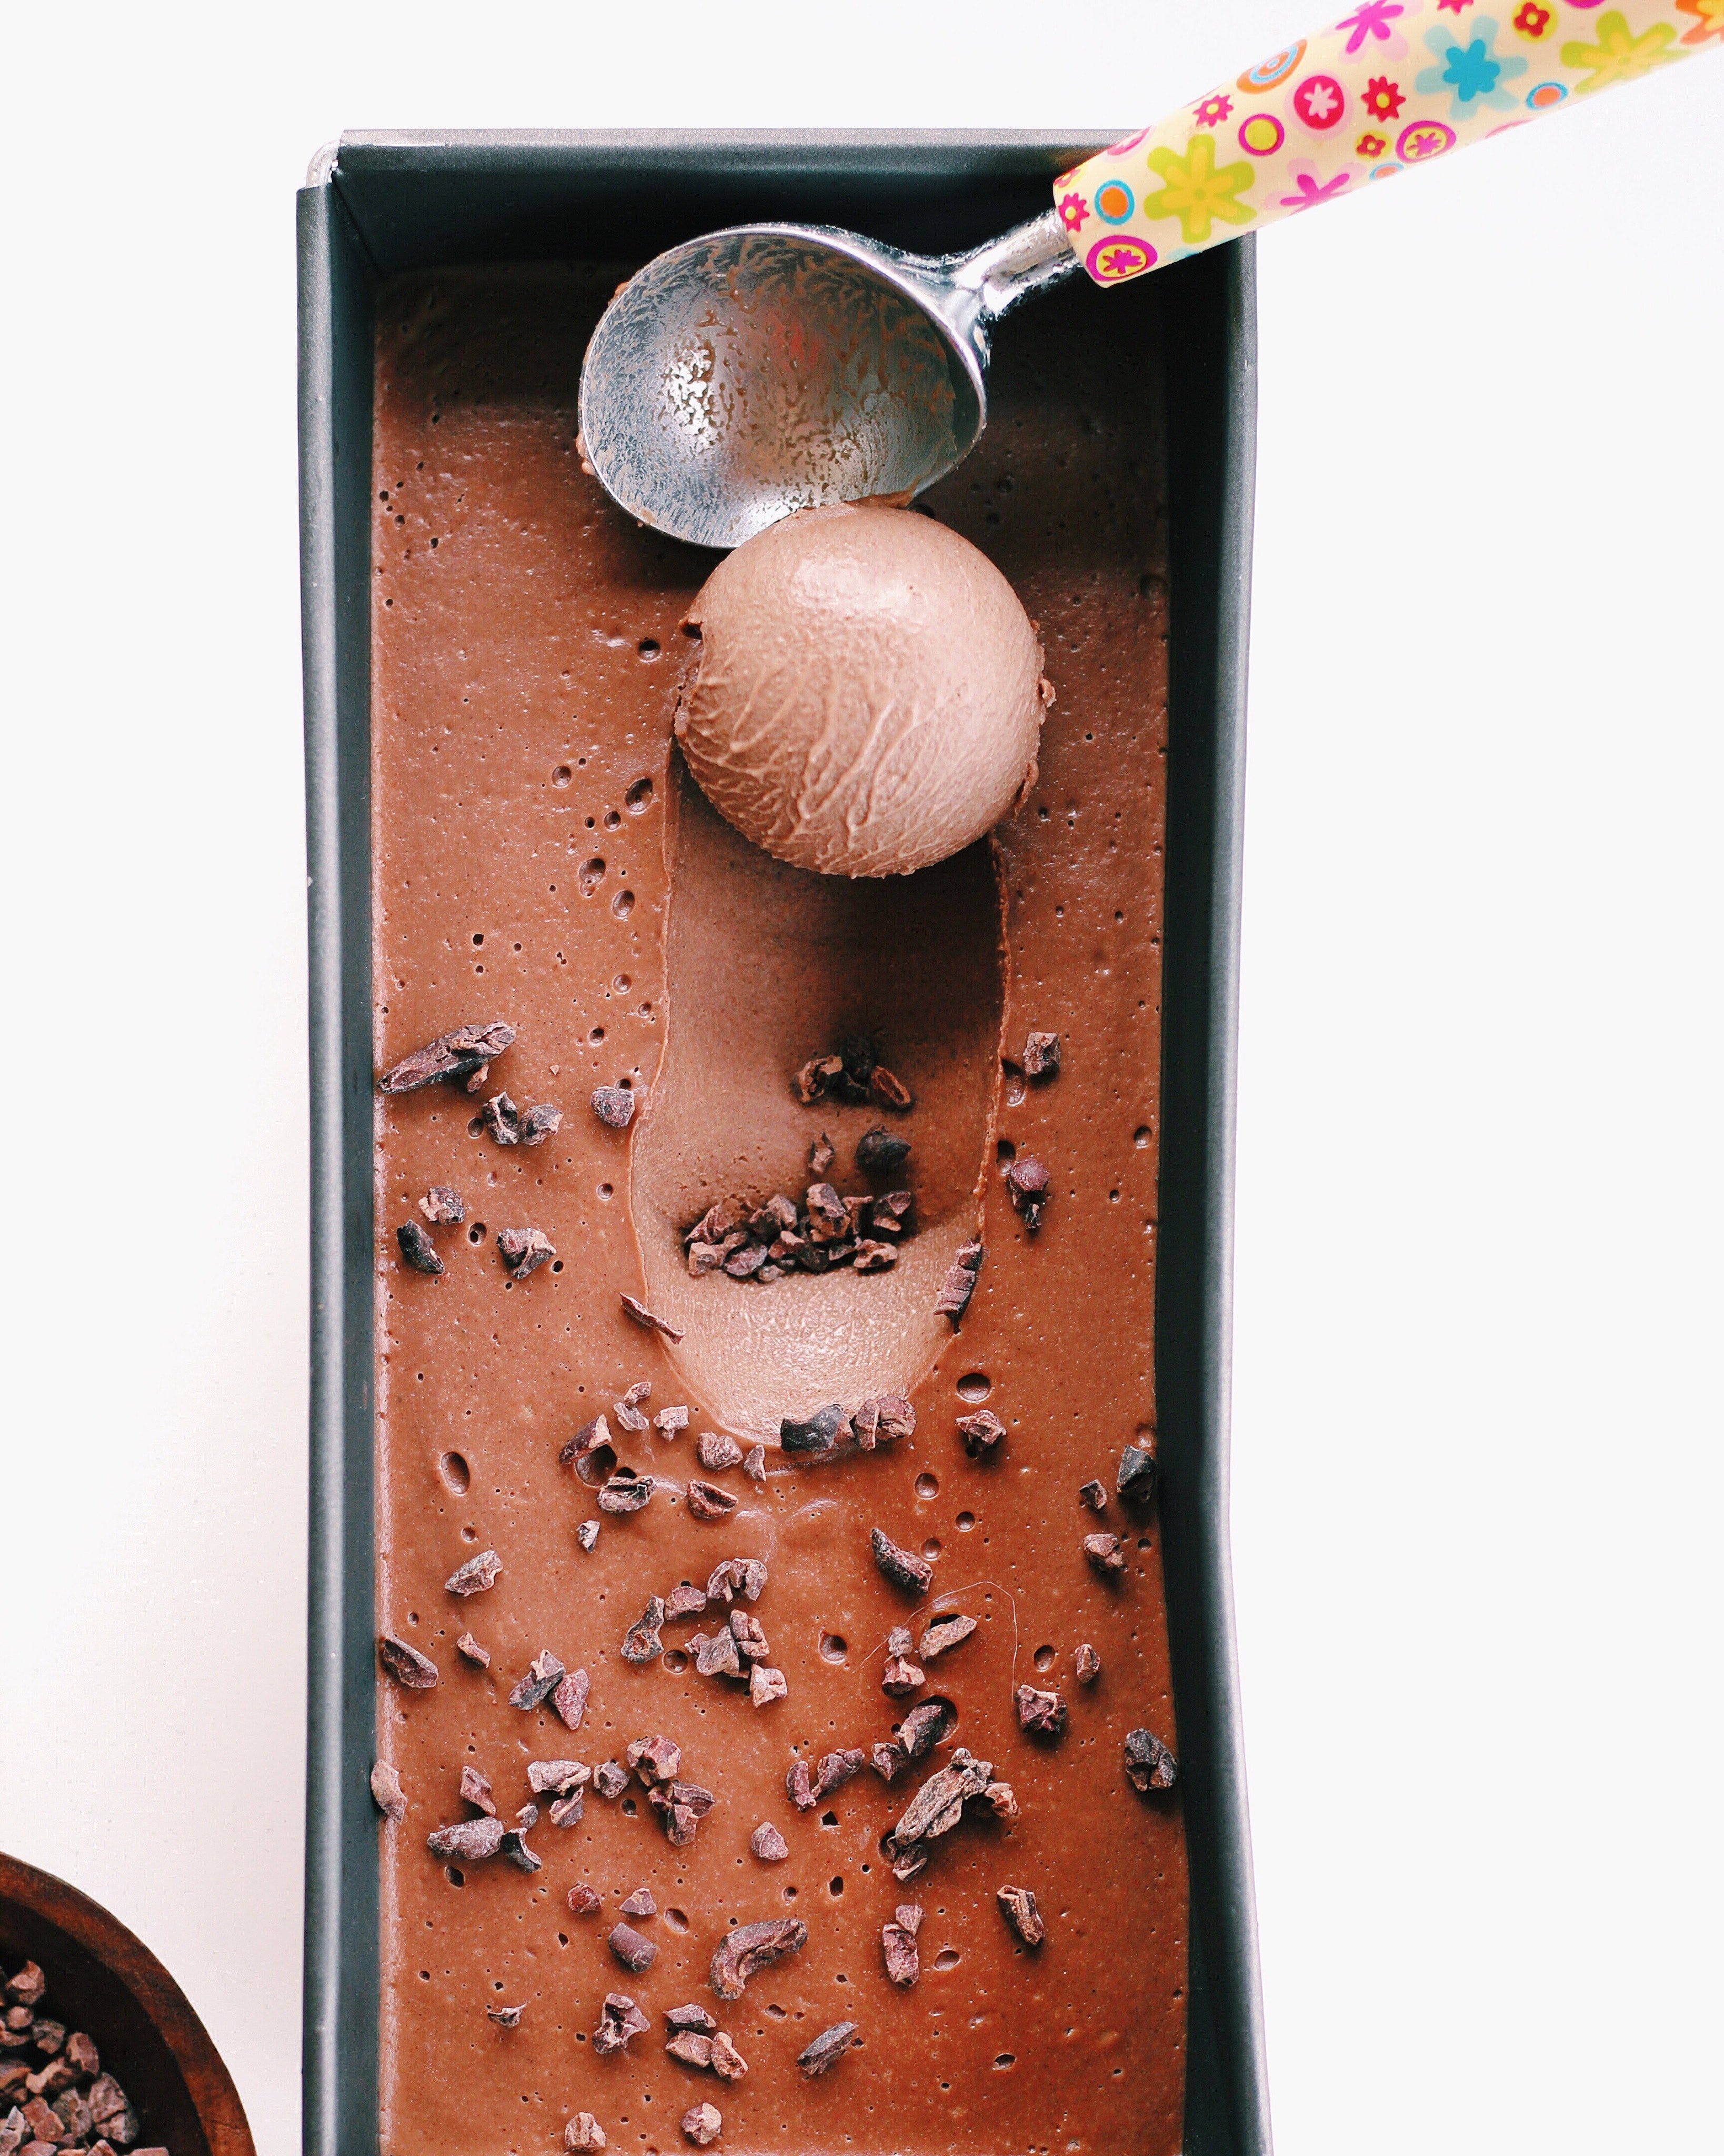 A container of chocolate ice cream. | Pexels/ Alisha Mishra 